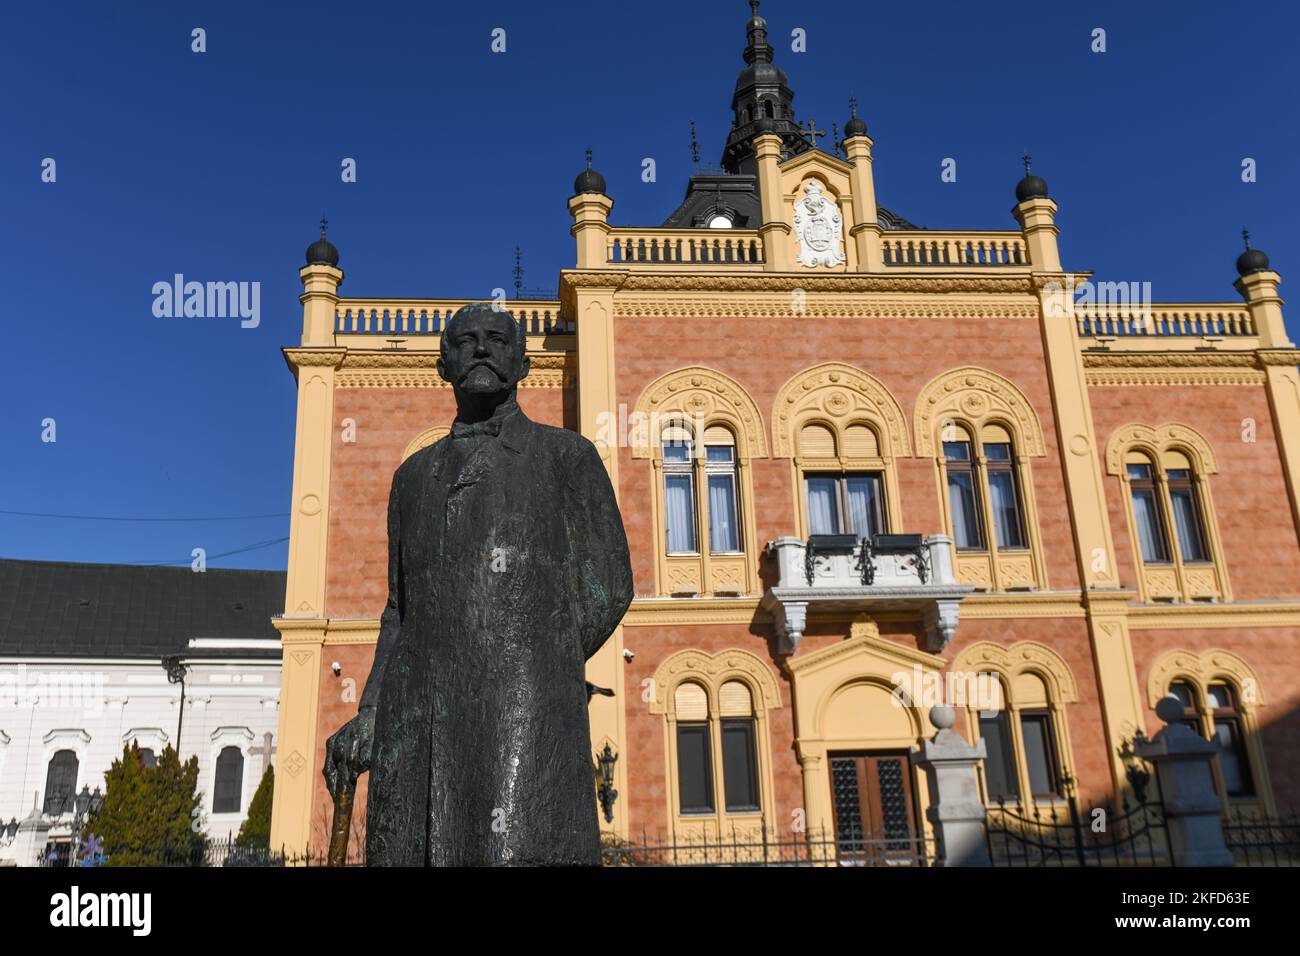 Novi Sad: Palais de l'évêque du diocèse de Backa (Vladicanski Dvor), et statue de Jovan Jovanovic. Serbie Banque D'Images